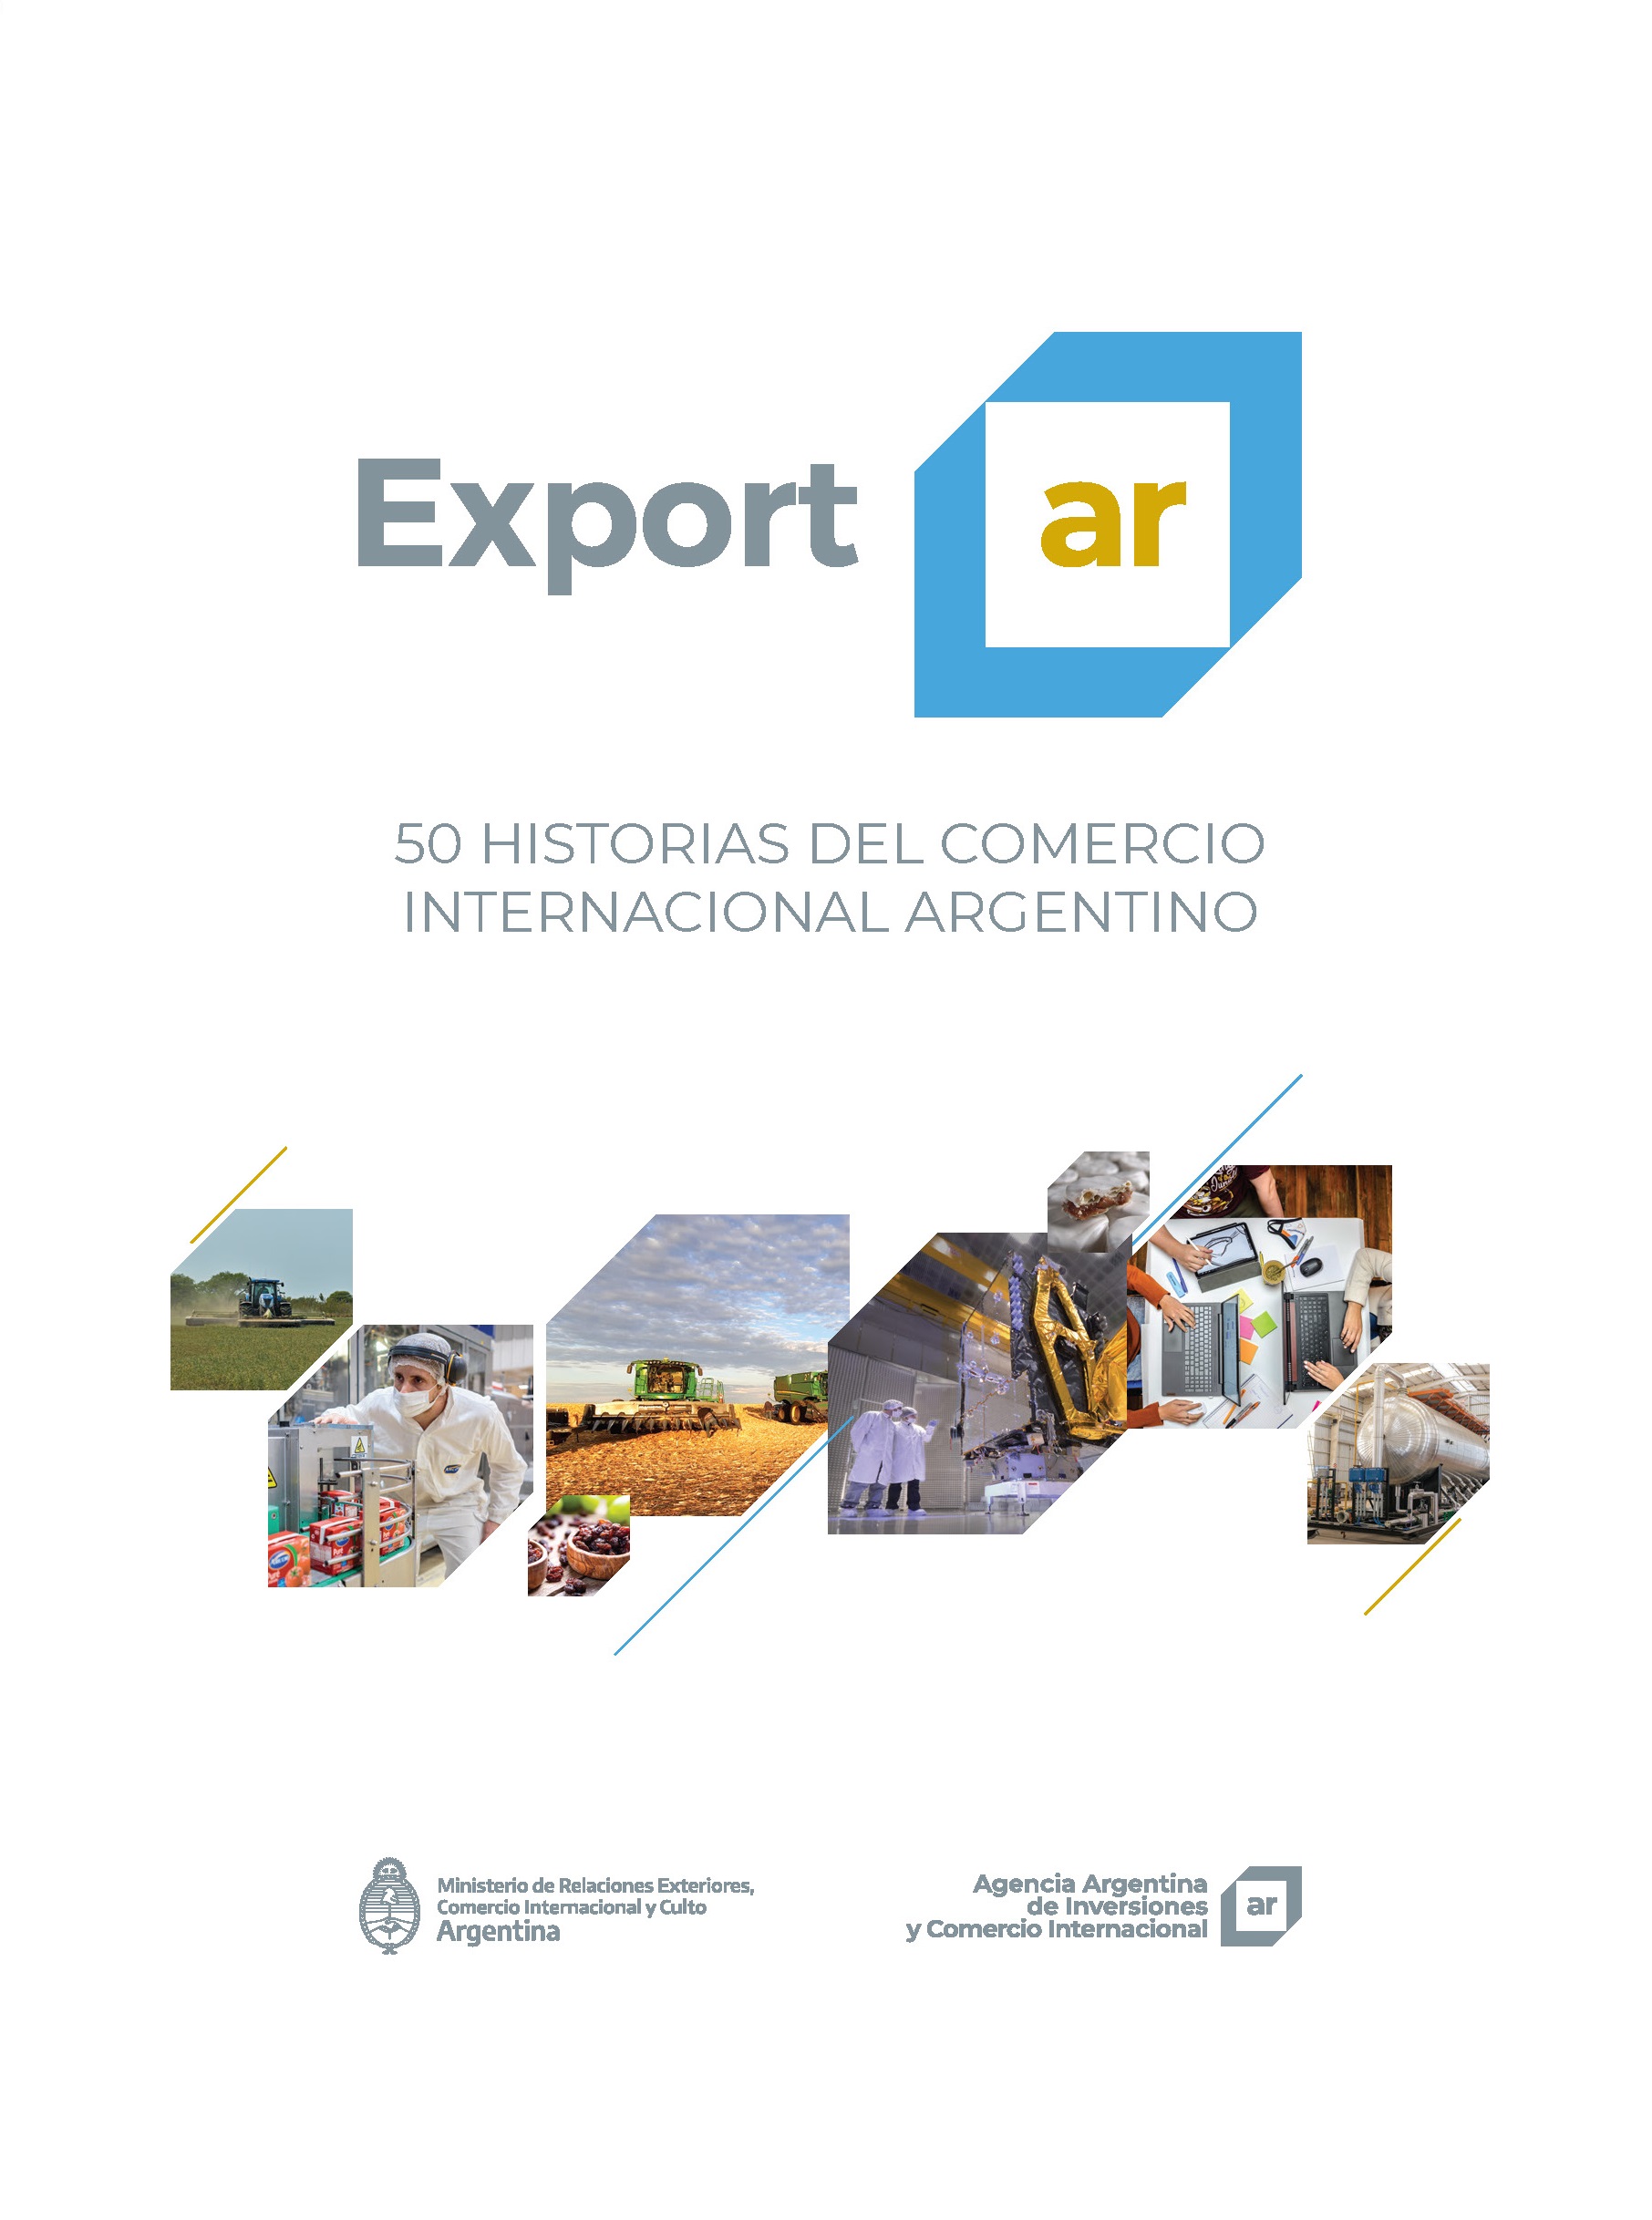 http://www.investandtrade.org.ar/images/publicaciones/Exportar. 50 historias del comercio internacional argentino